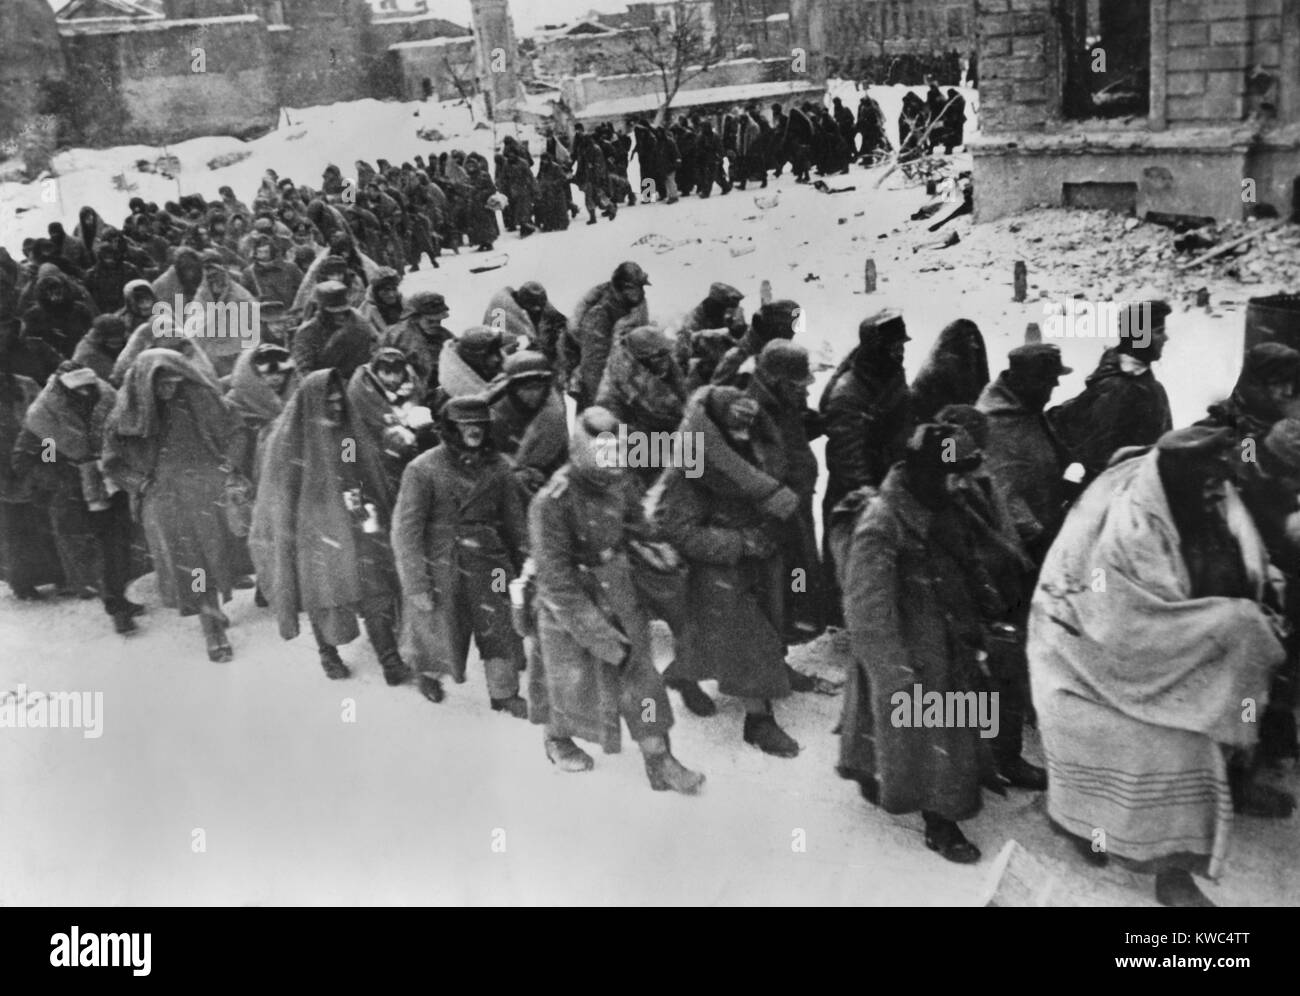 Prigionieri tedeschi marzo attraverso le strade innevate della martoriata Stalingrado nel gennaio-febbraio. 1943. Avvolto in coperte o qualsiasi altra cosa per la protezione dalle intemperie invernale, sono i resti del distrutto tedesco esercito 6a. Di 107,800 soldati presi prigionieri, solo 6000 sono stati conosciuti per sopravvivere la loro prigionia. Guerra Mondiale 2 (BSLOC 2015 13 111) Foto Stock